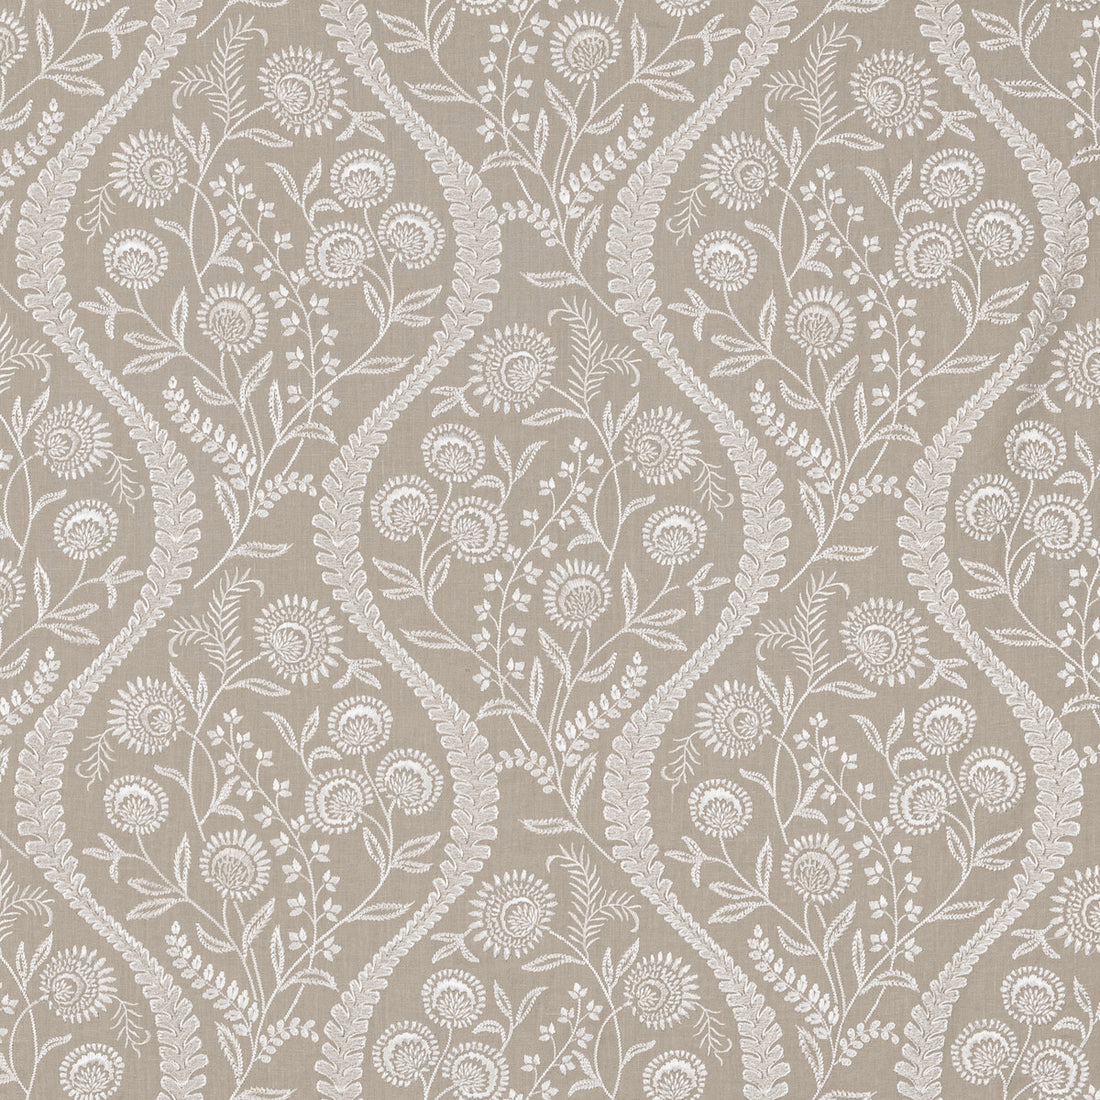 Floriblanca fabric in linen color - pattern 2020219.16.0 - by Lee Jofa in the Oscar De La Renta IV collection